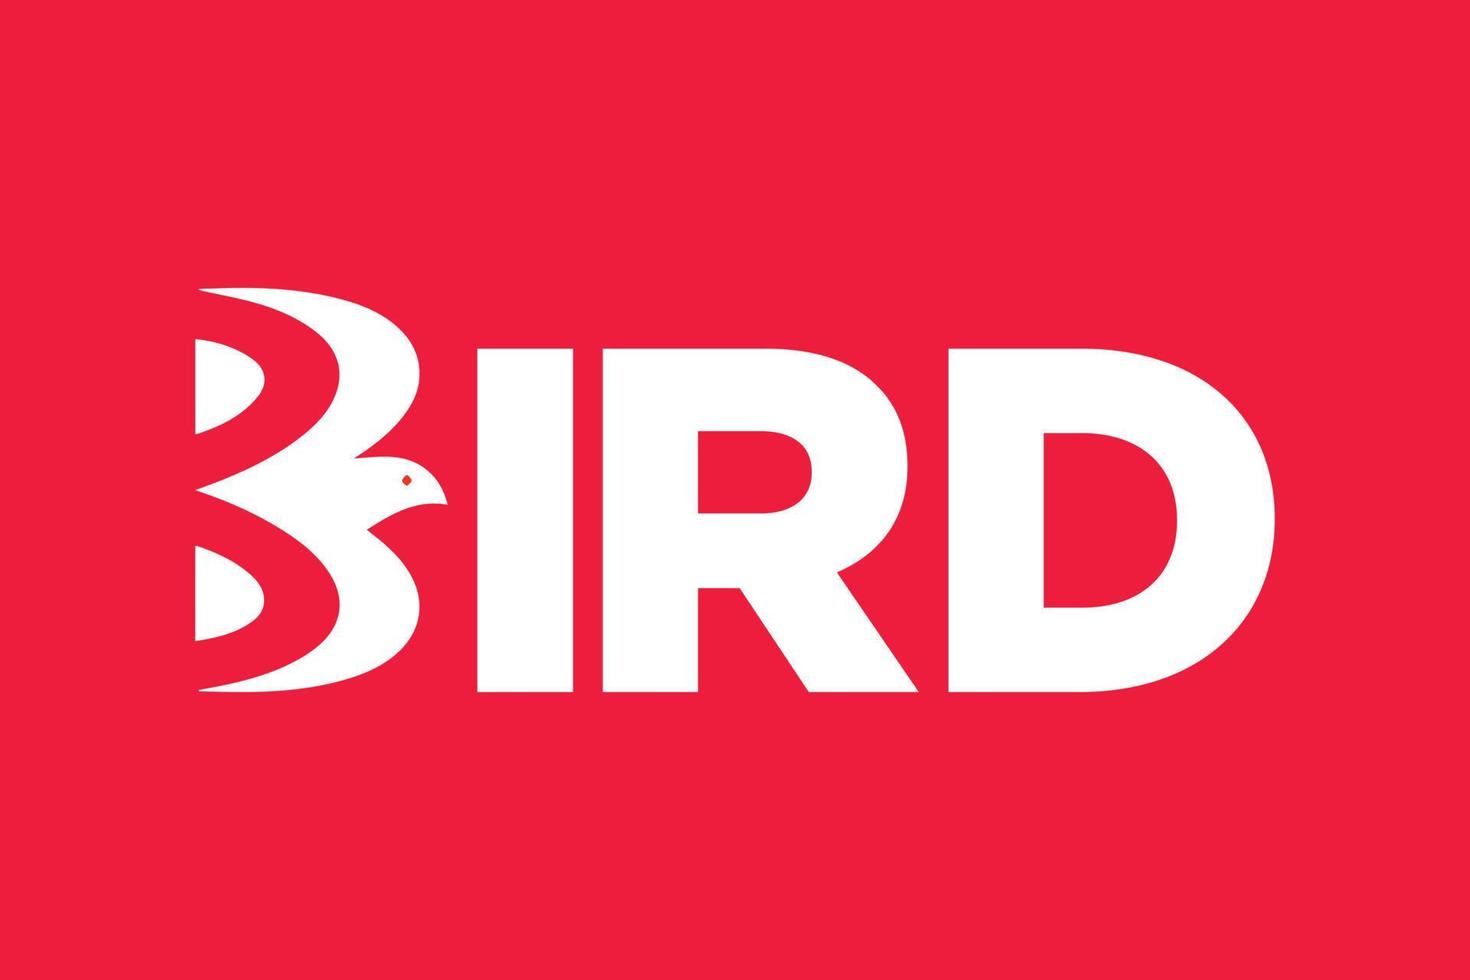 vector de texto de pájaro. palabra estilizada pájaro